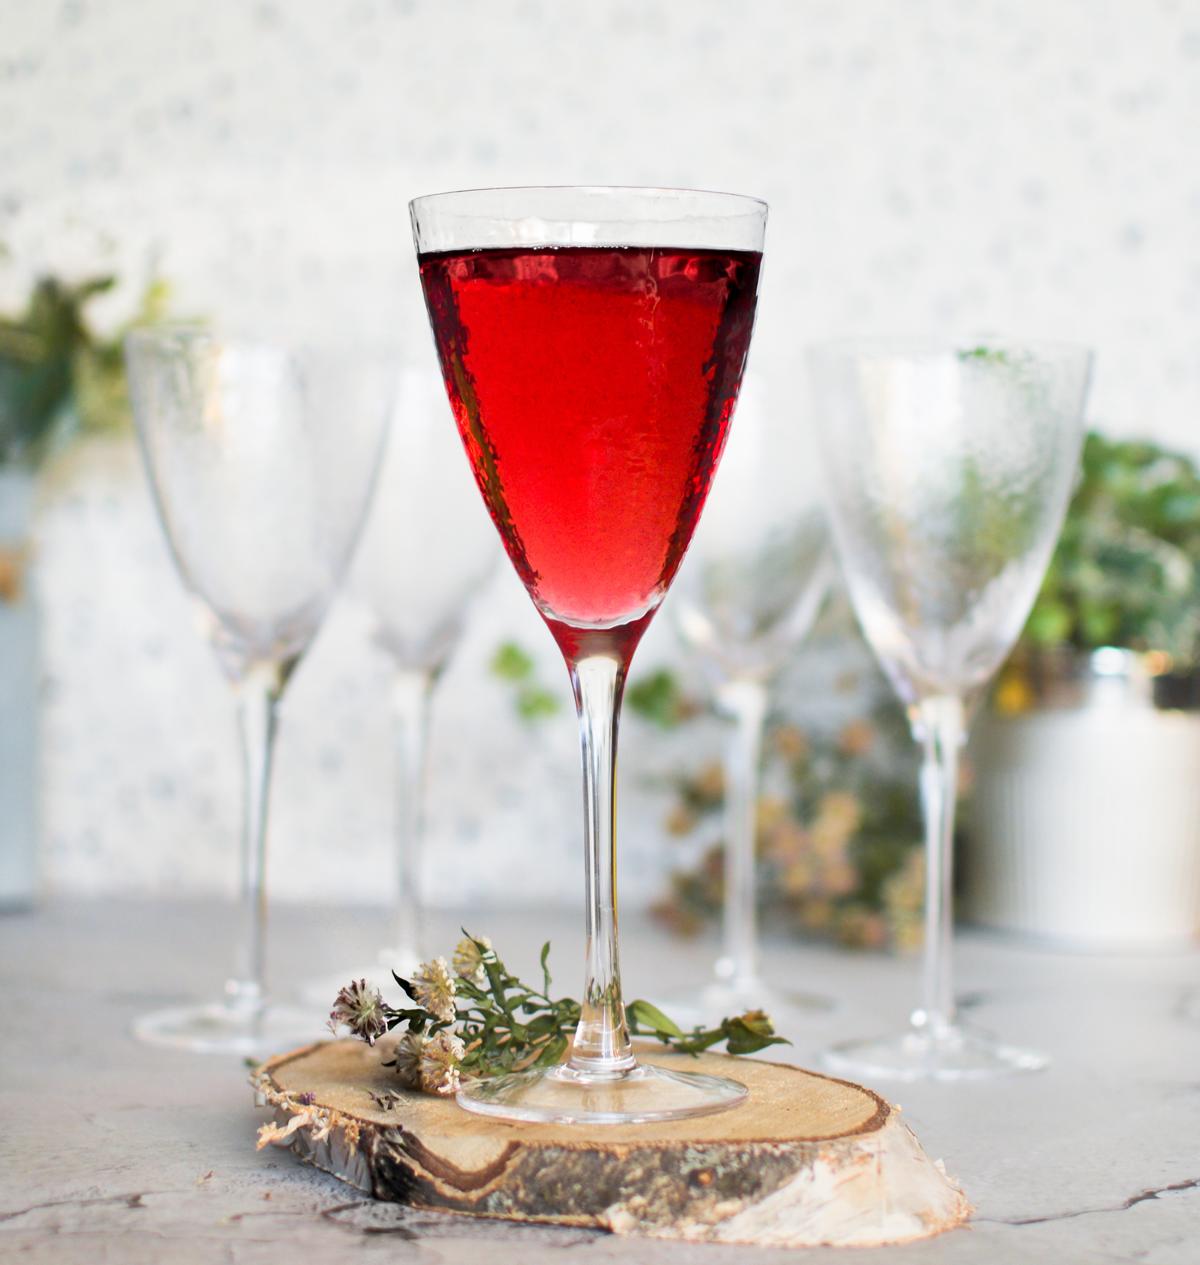 6 verres à vin avec effet marteau verres à vin rouge verres à vin blanc gobelet à vin verre à vin